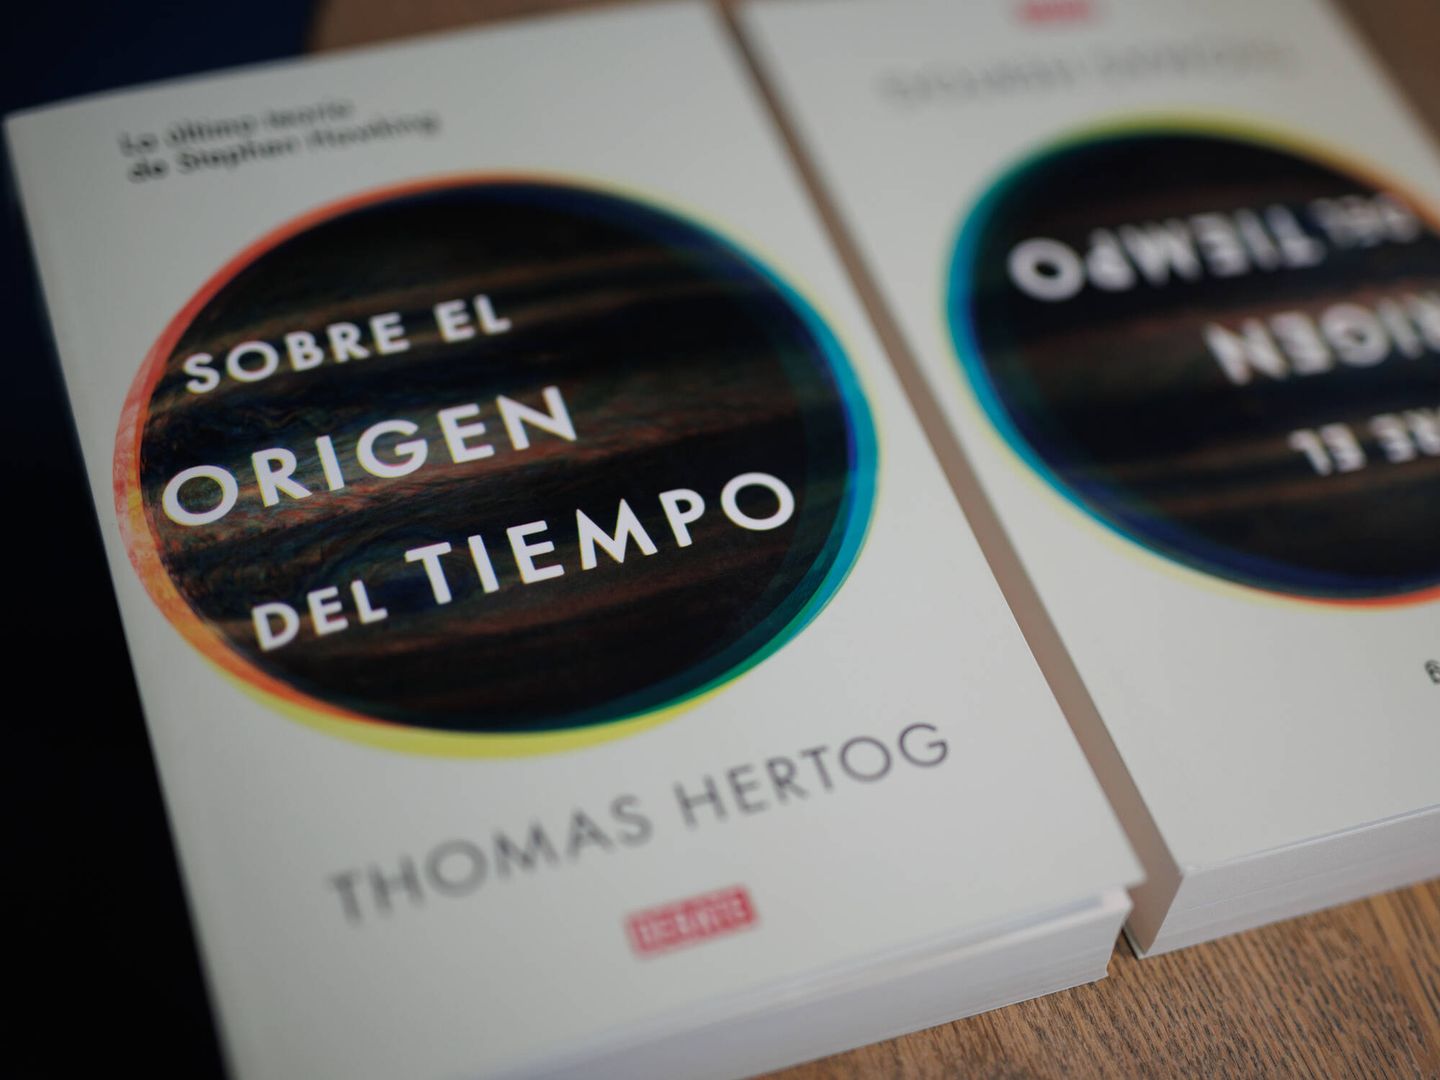 'Sobre el origen del tiempo', de Thomas Hertog. (A. M. V.)